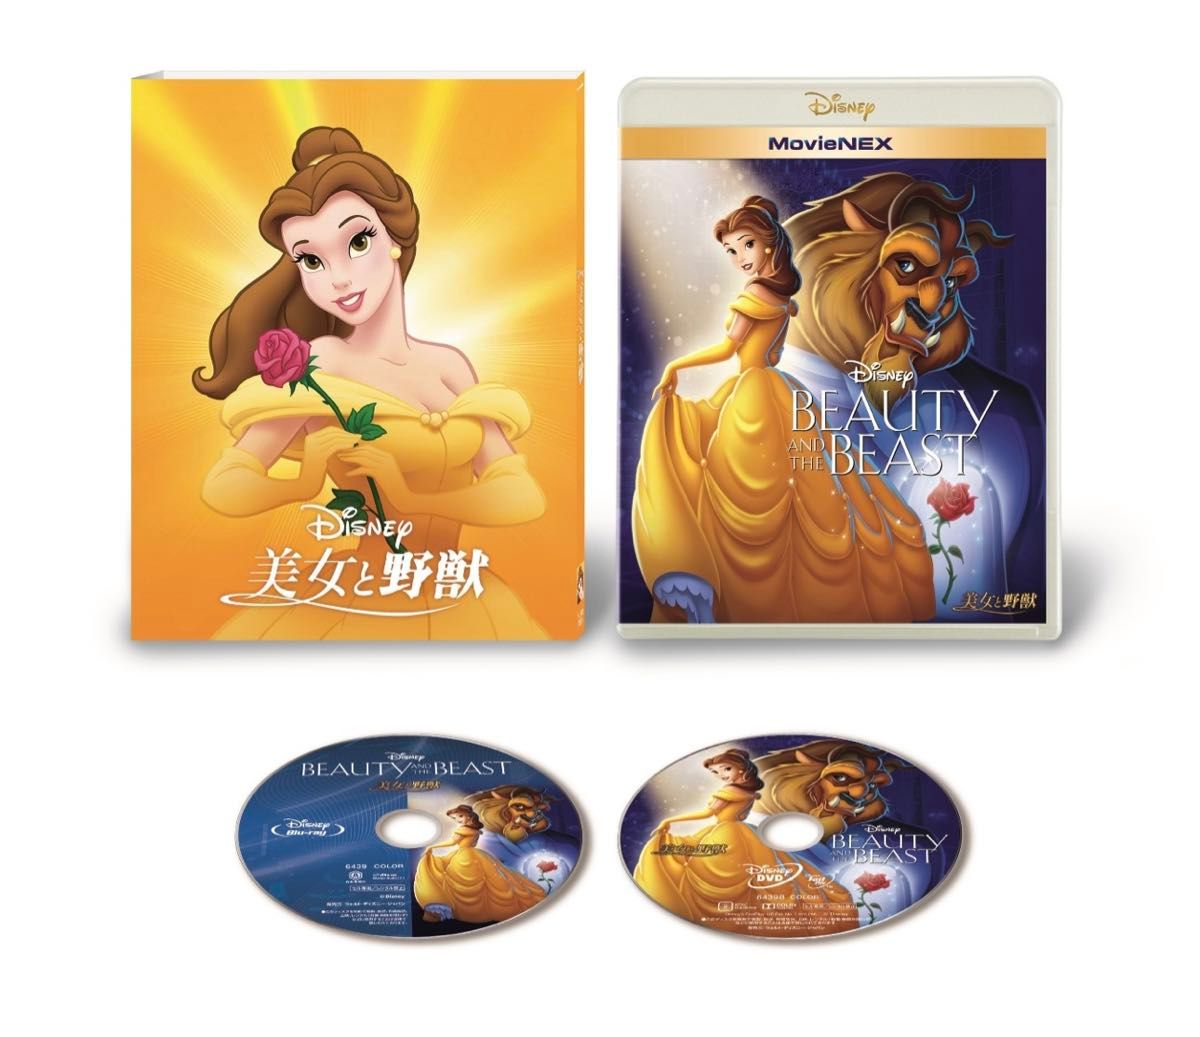 【新品未開封】美女と野獣 MovieNEX ブルーレイ+DVD+デジタルコピー ディズニー マジックコード デジタルコピー